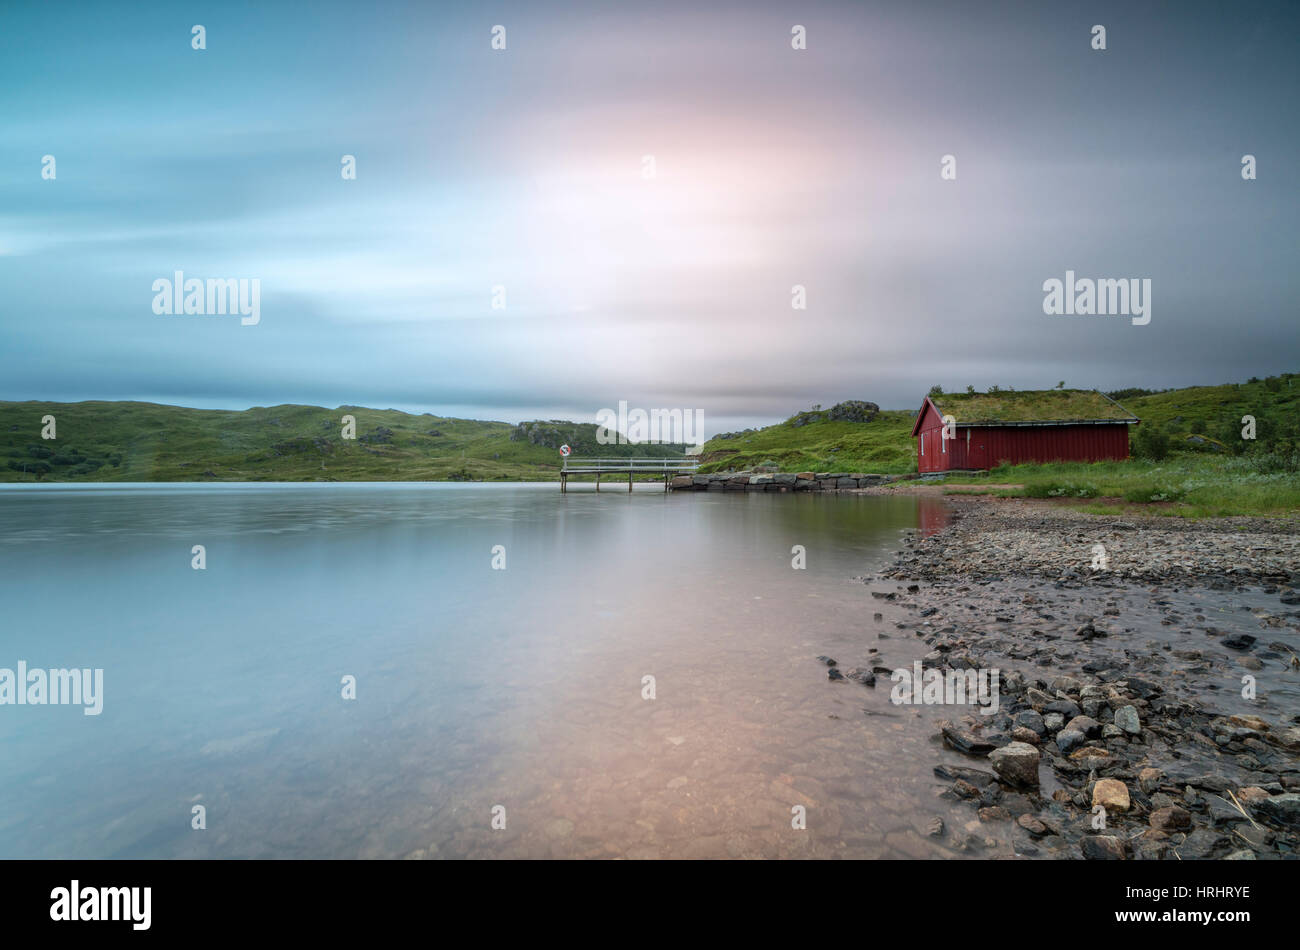 Feux de rose du soleil de minuit s'allumer et la rorbu typique, Holdalsvatnet, Vestvagoy, îles Lofoten, Norvège Banque D'Images